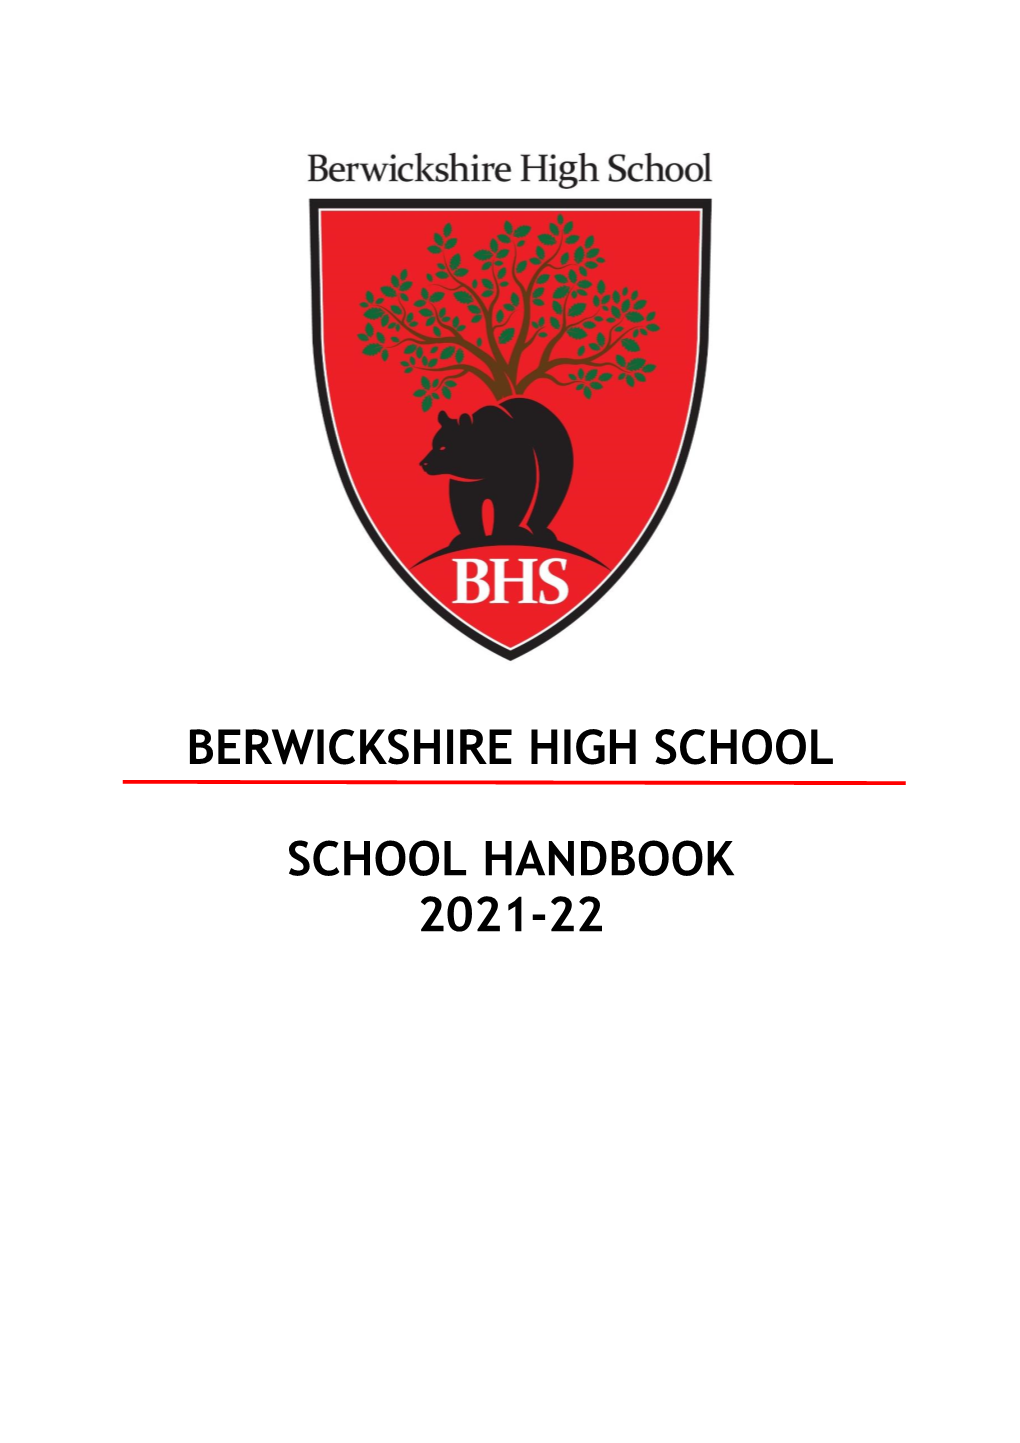 Berwickshire High School School Handbook 2021-22